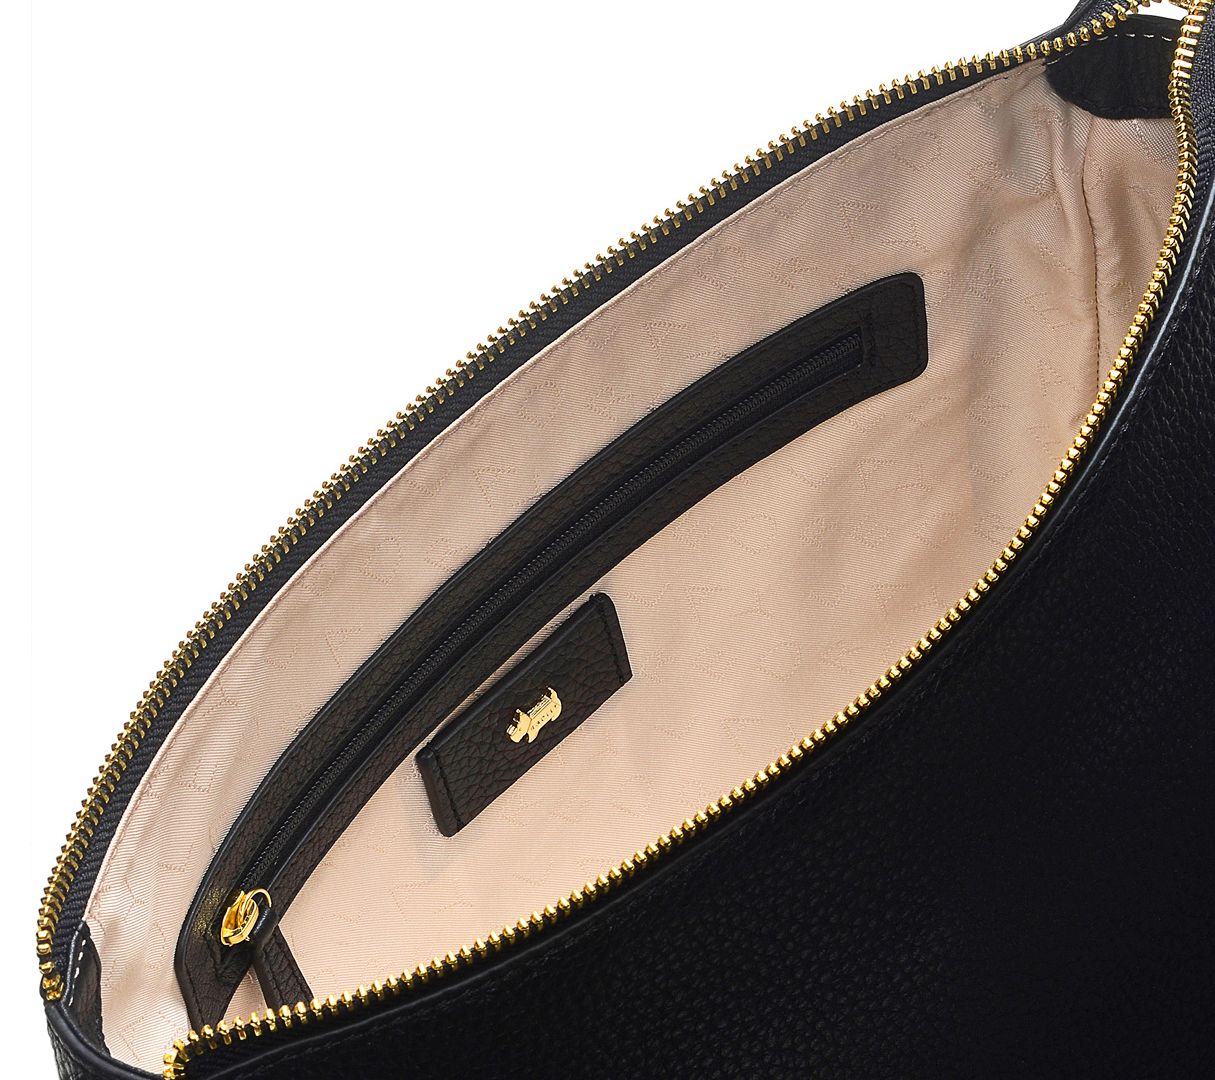 RADLEY London Dukes Place - Medium Ziptop Crossbody: Handbags